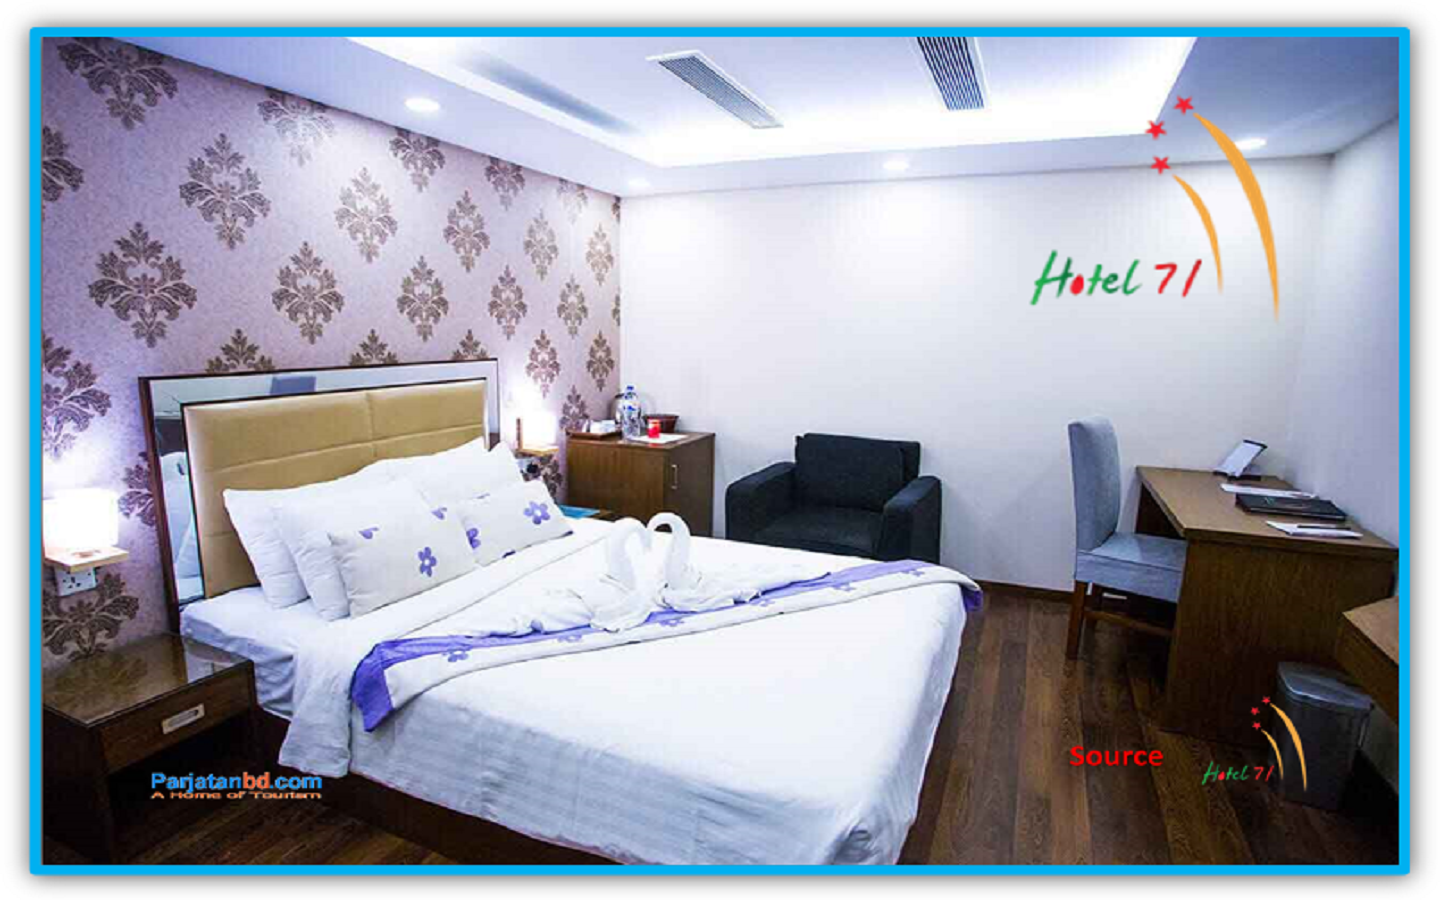 Room Lavish Double -1, Hotel 71, Bijoynagar